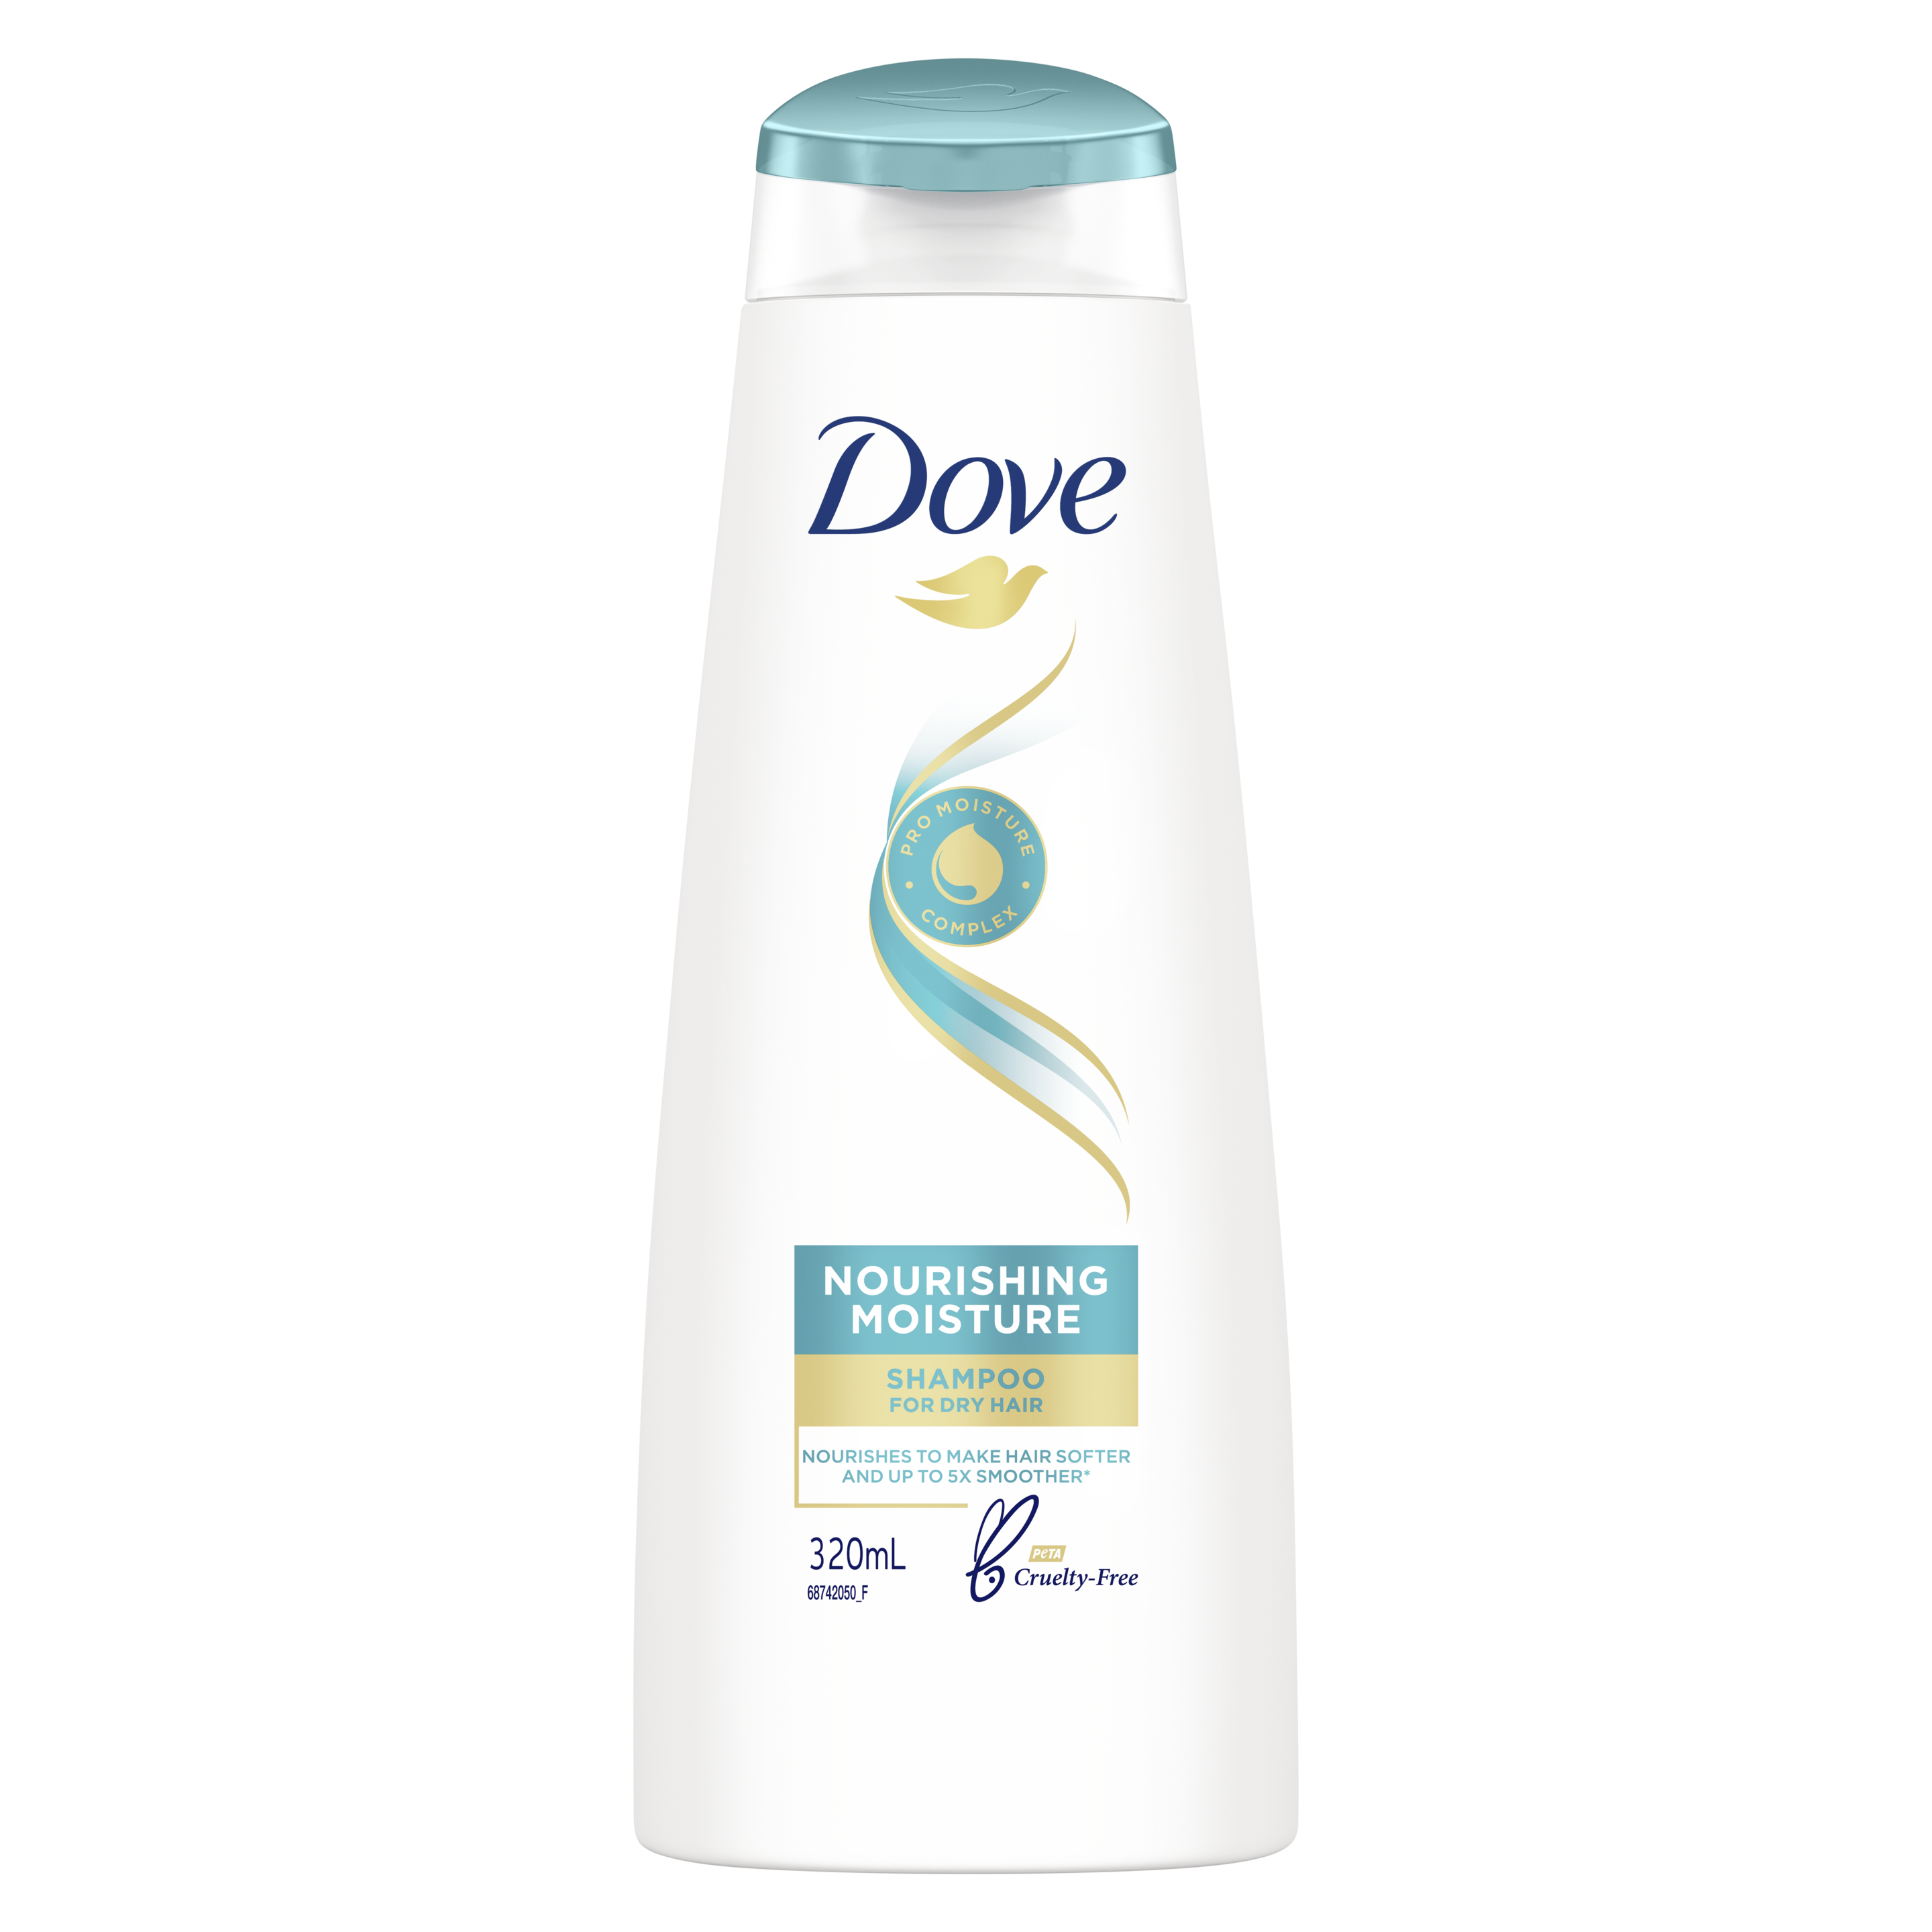 Dove Nourishing Moisture Shampoo 320ml Text